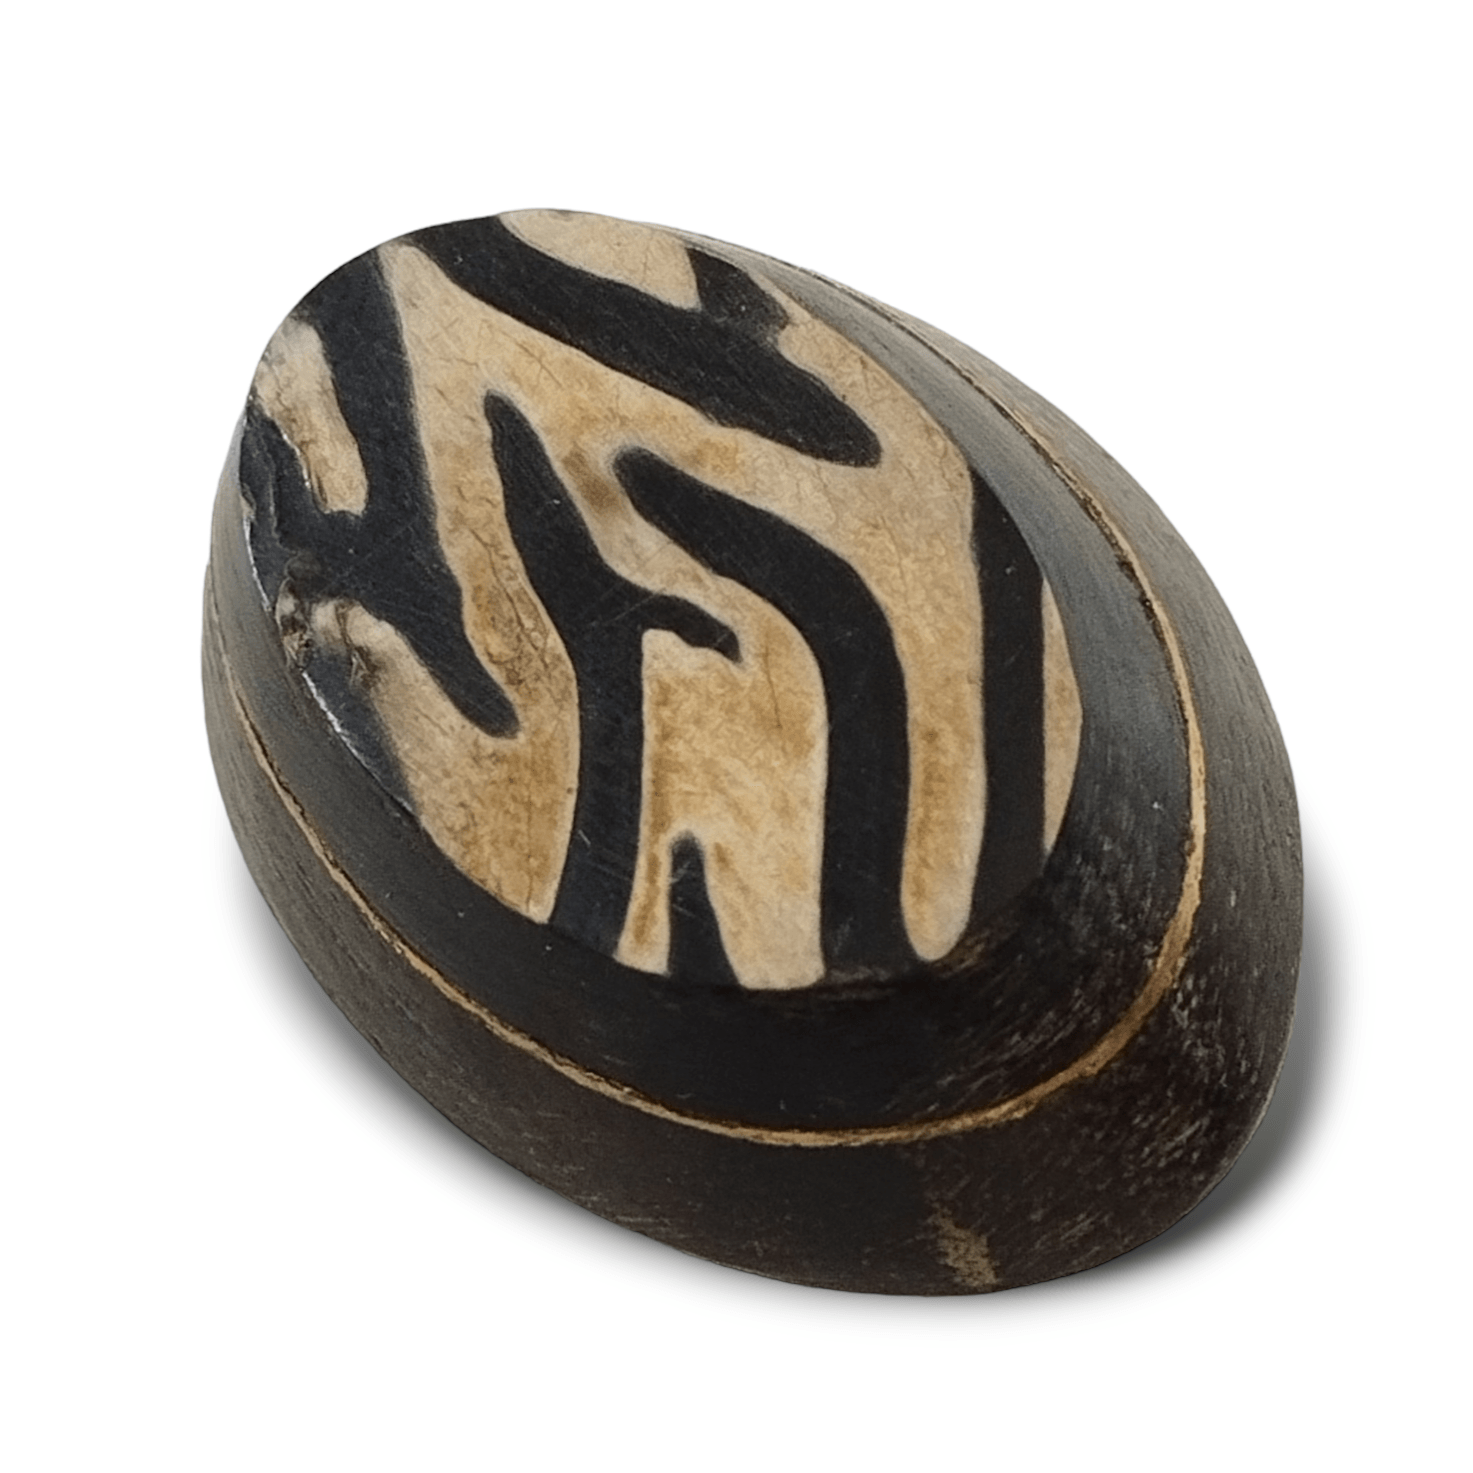 Bottone in legno di forma ovale, tornito e decorato a mano. Anni settanta - Merceria Rispoli